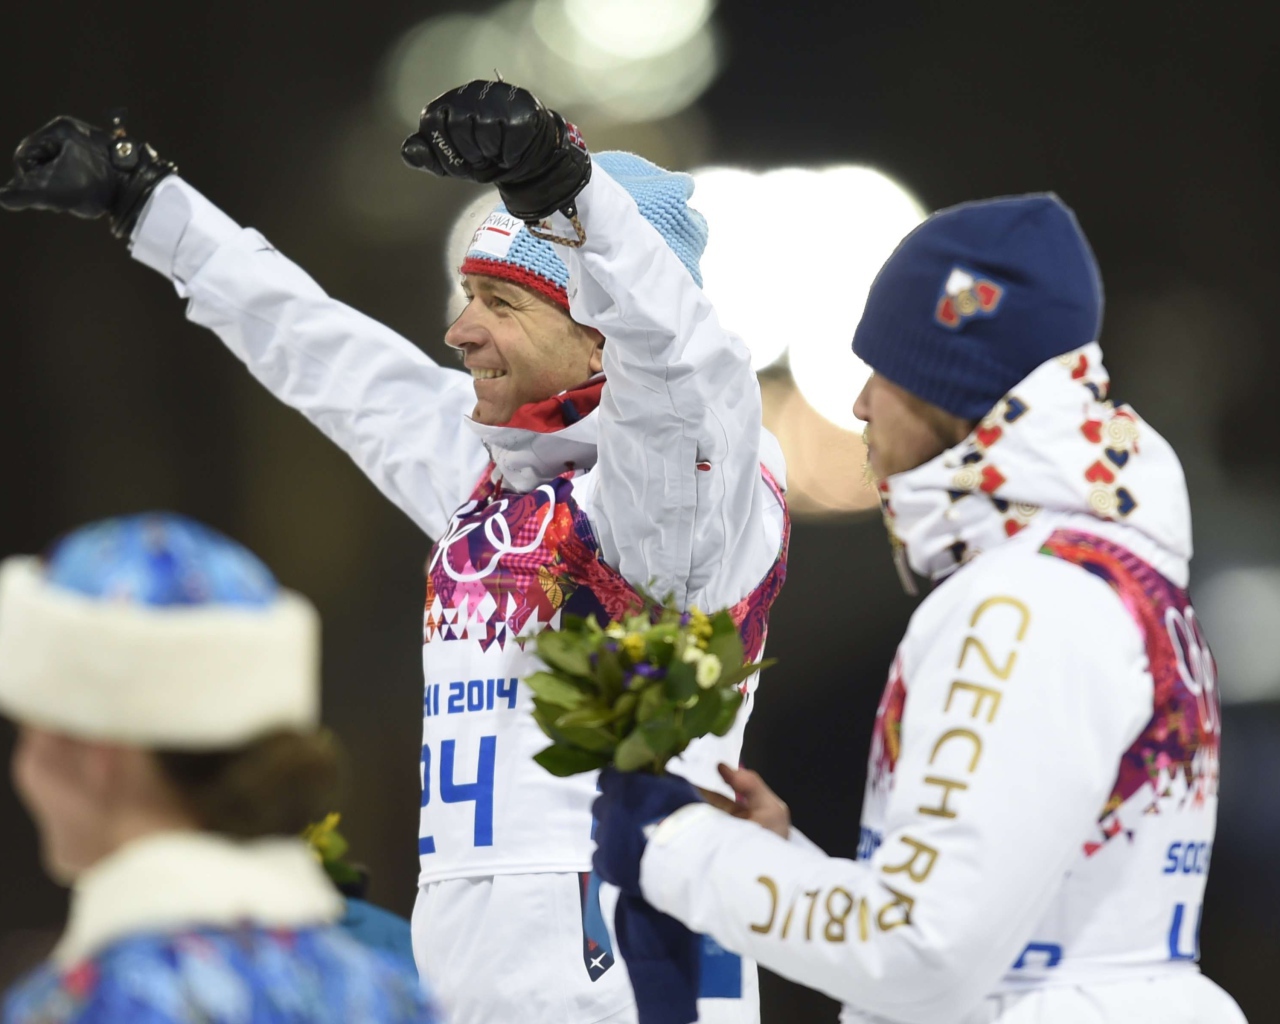 Уле Эйнар Бьорндален Норвегия биатлон золотой медалист Олимпиады в Сочи